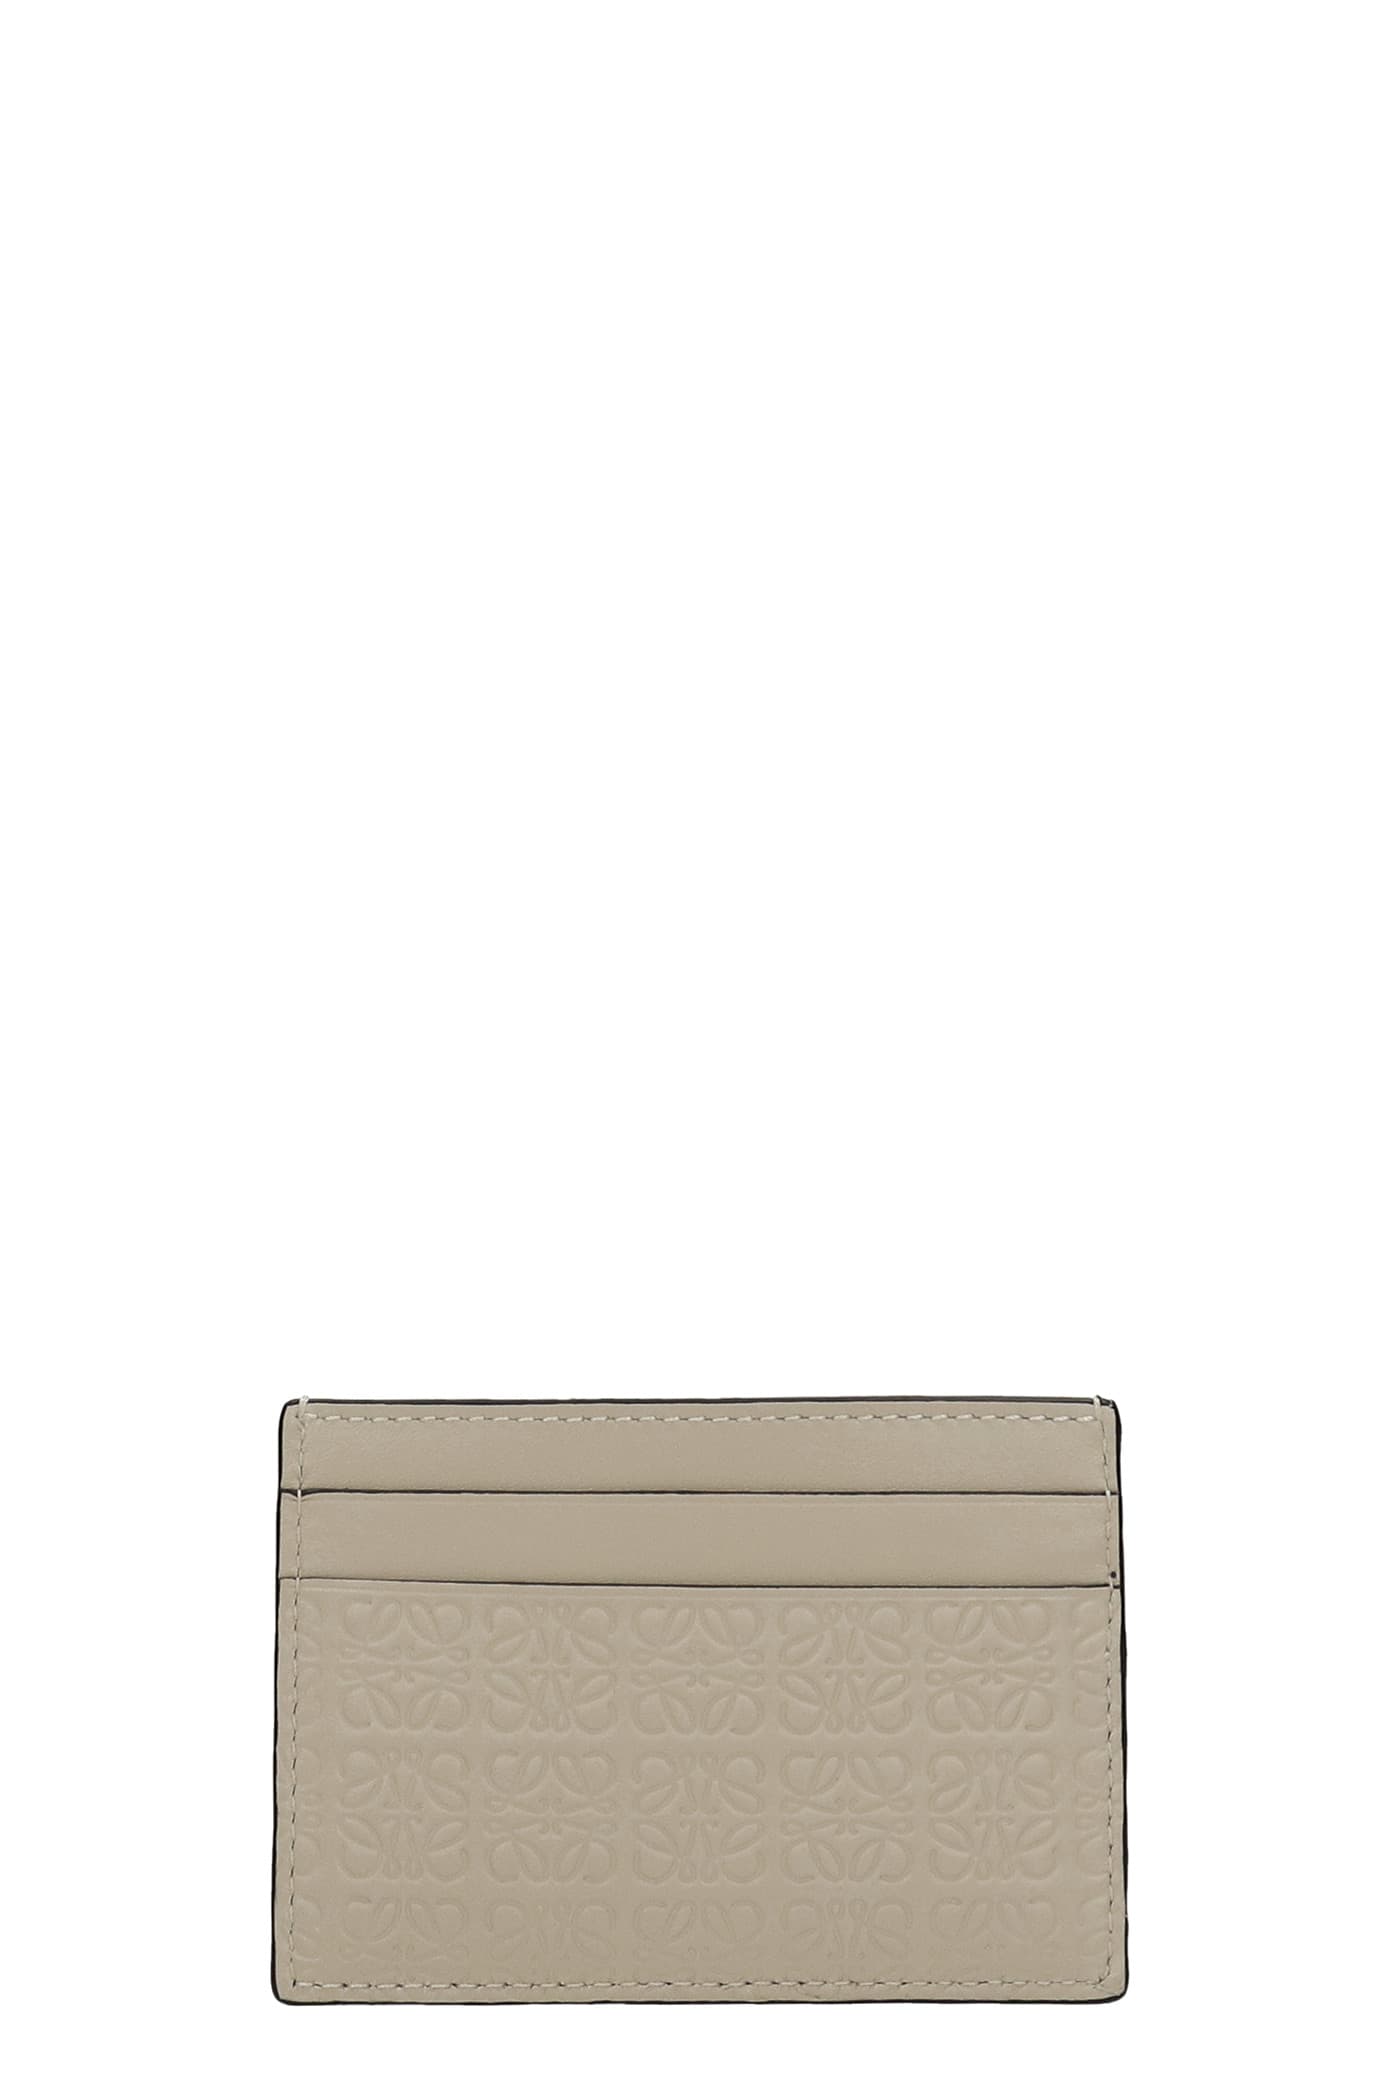 Loewe Repeat Plain Wallet In Beige Leather